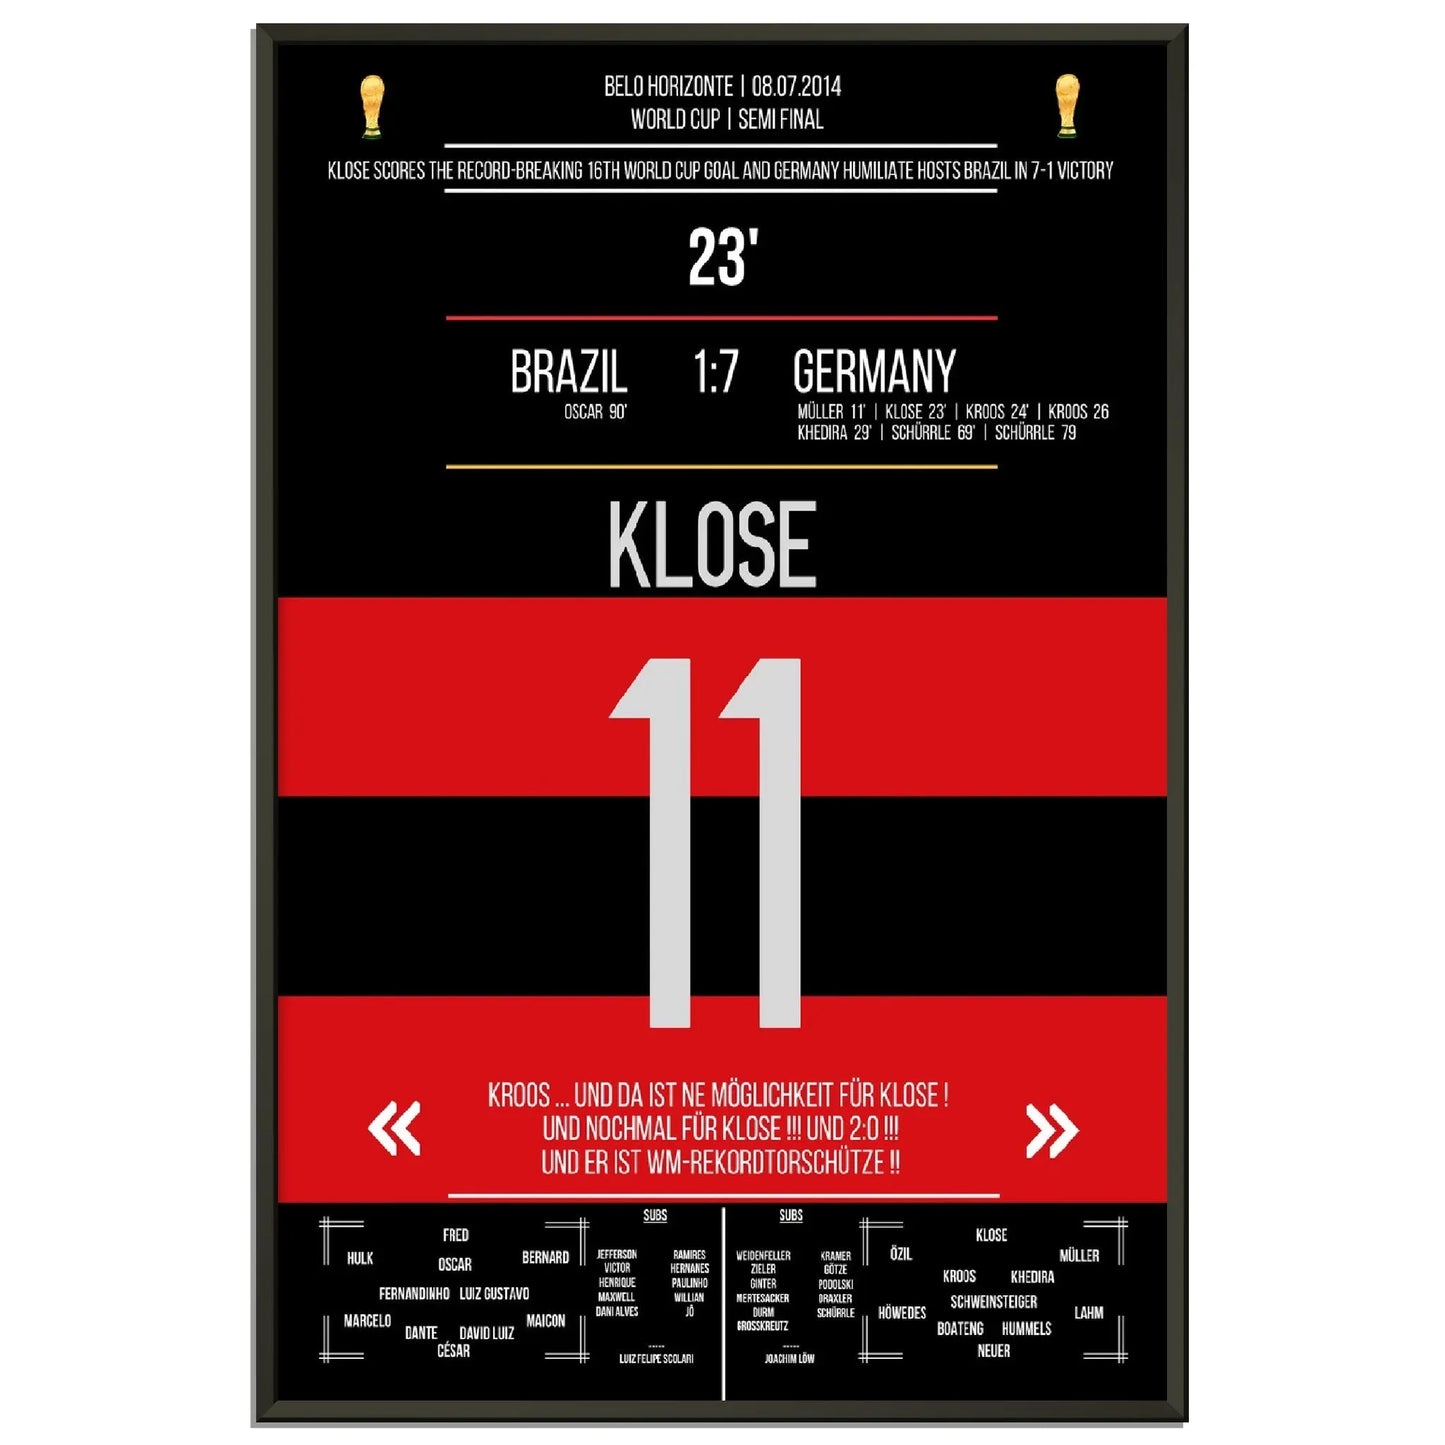 Kloses WM-Rekordtor im 7-1 Sieg Deutschland - Brasilien 2014 